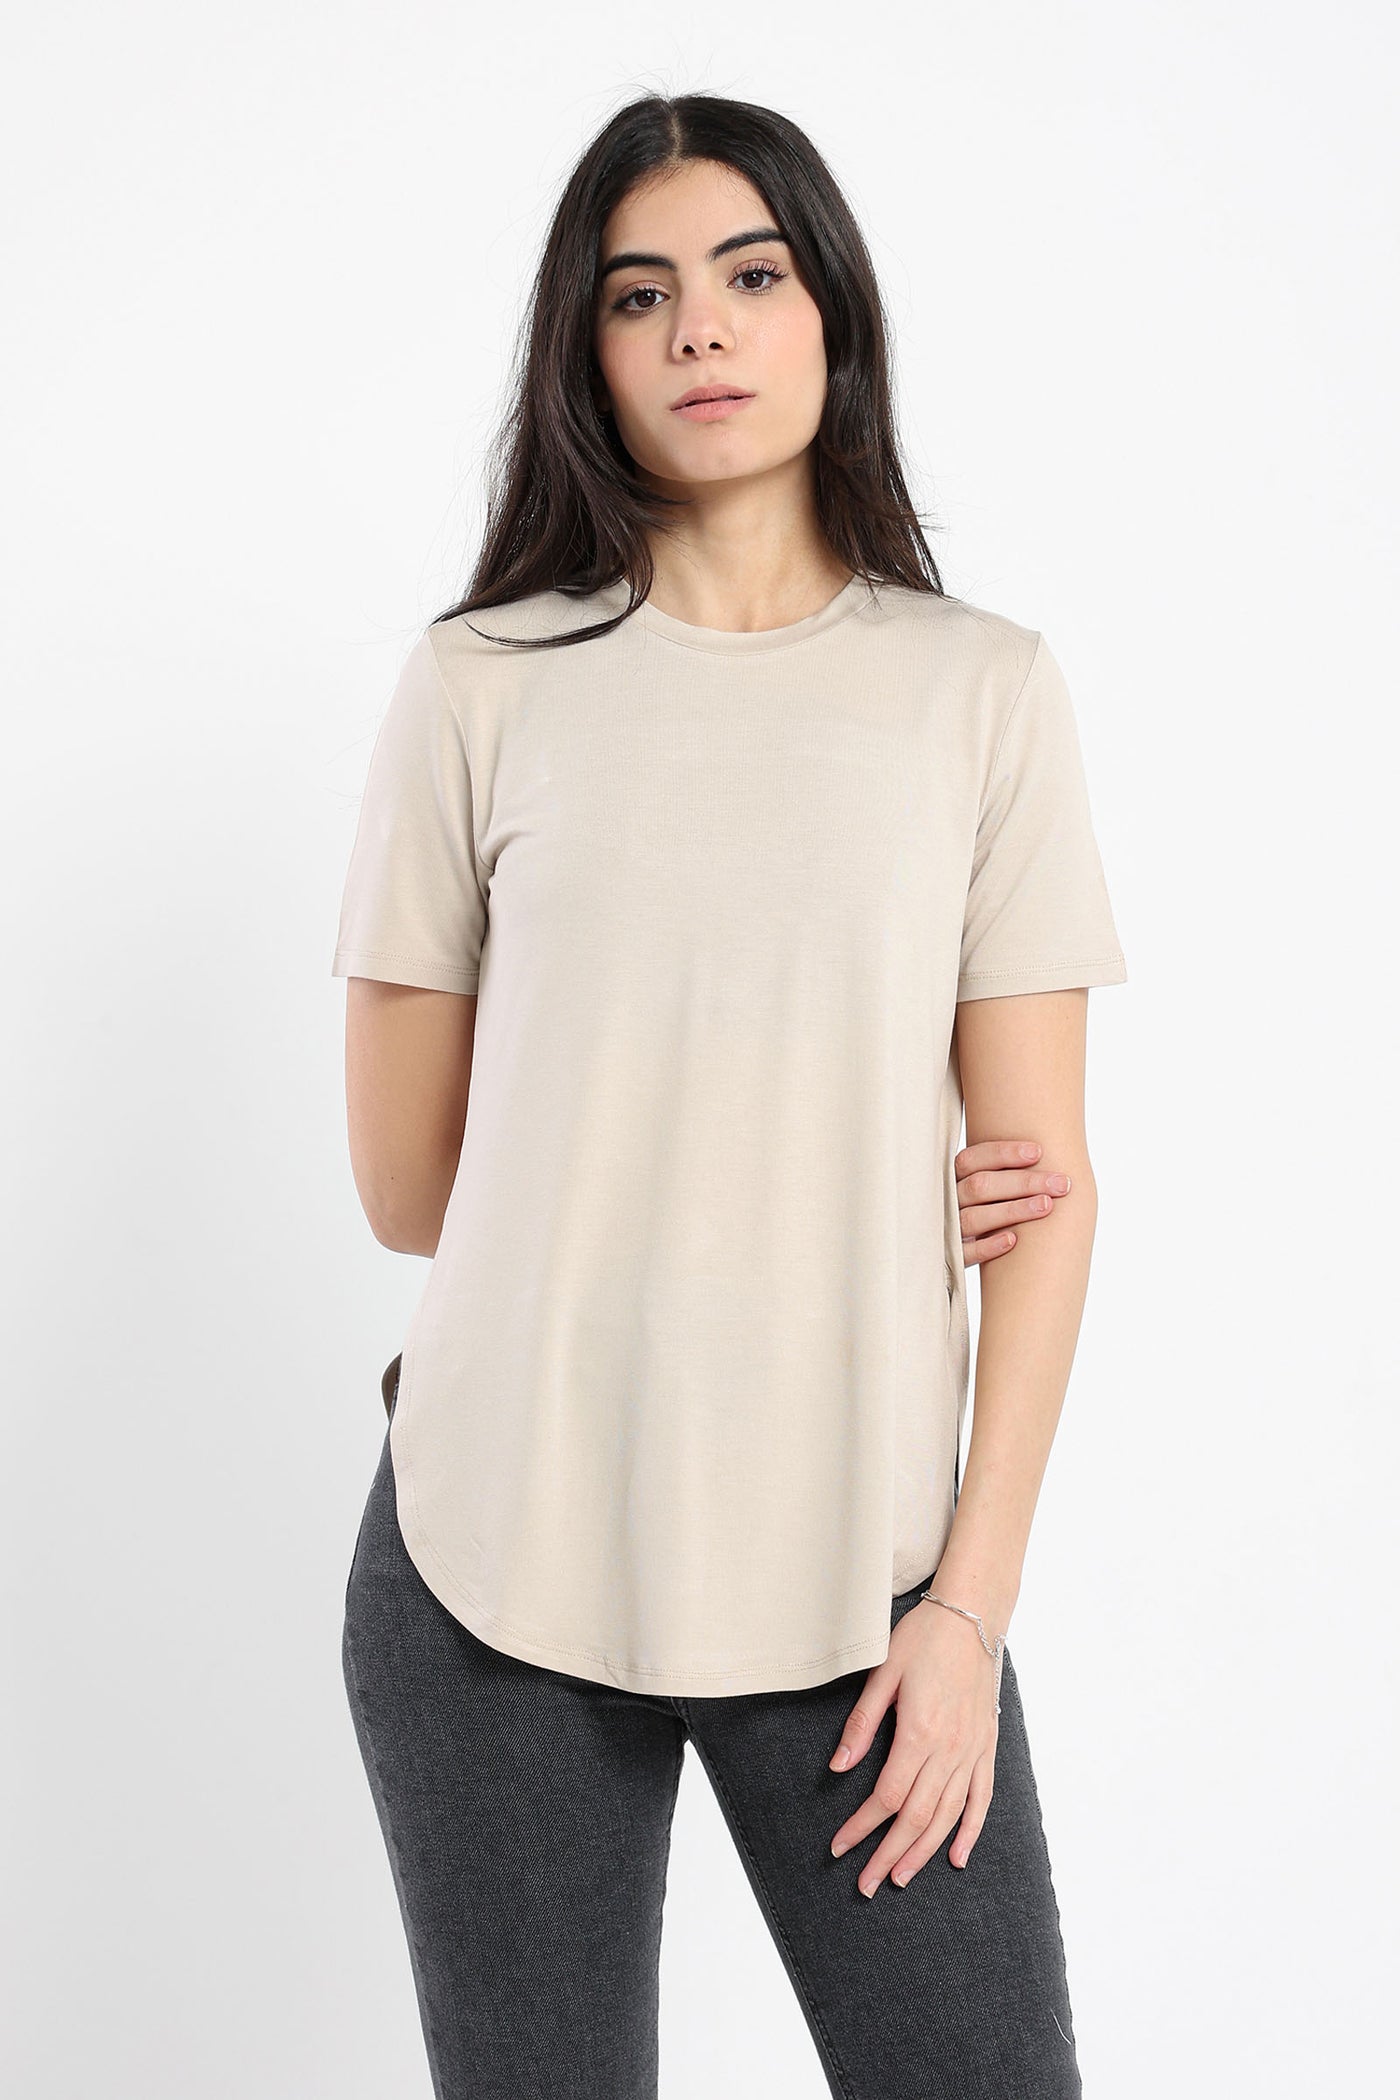 T-shirt - Round Hem - Short sleeves